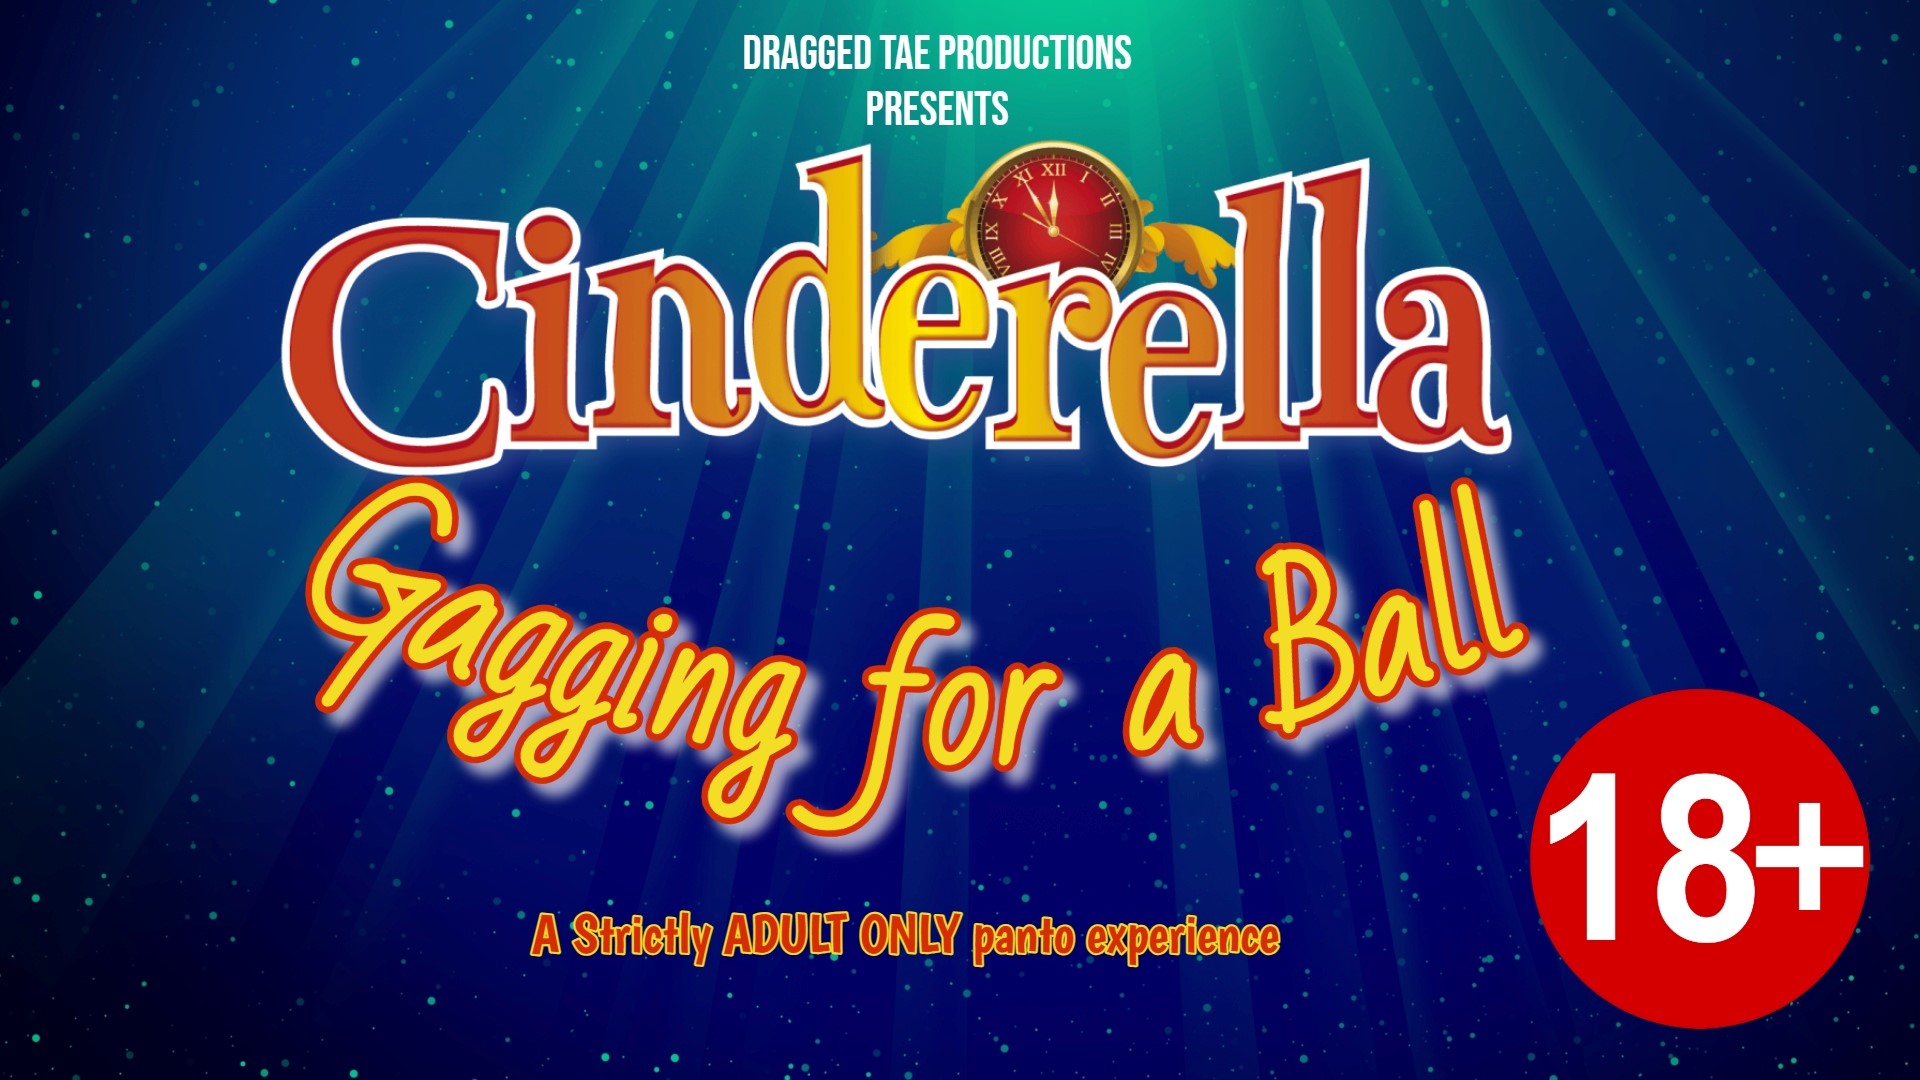 Cinderella - Gagging for a Ball at Stewarton Area Centre